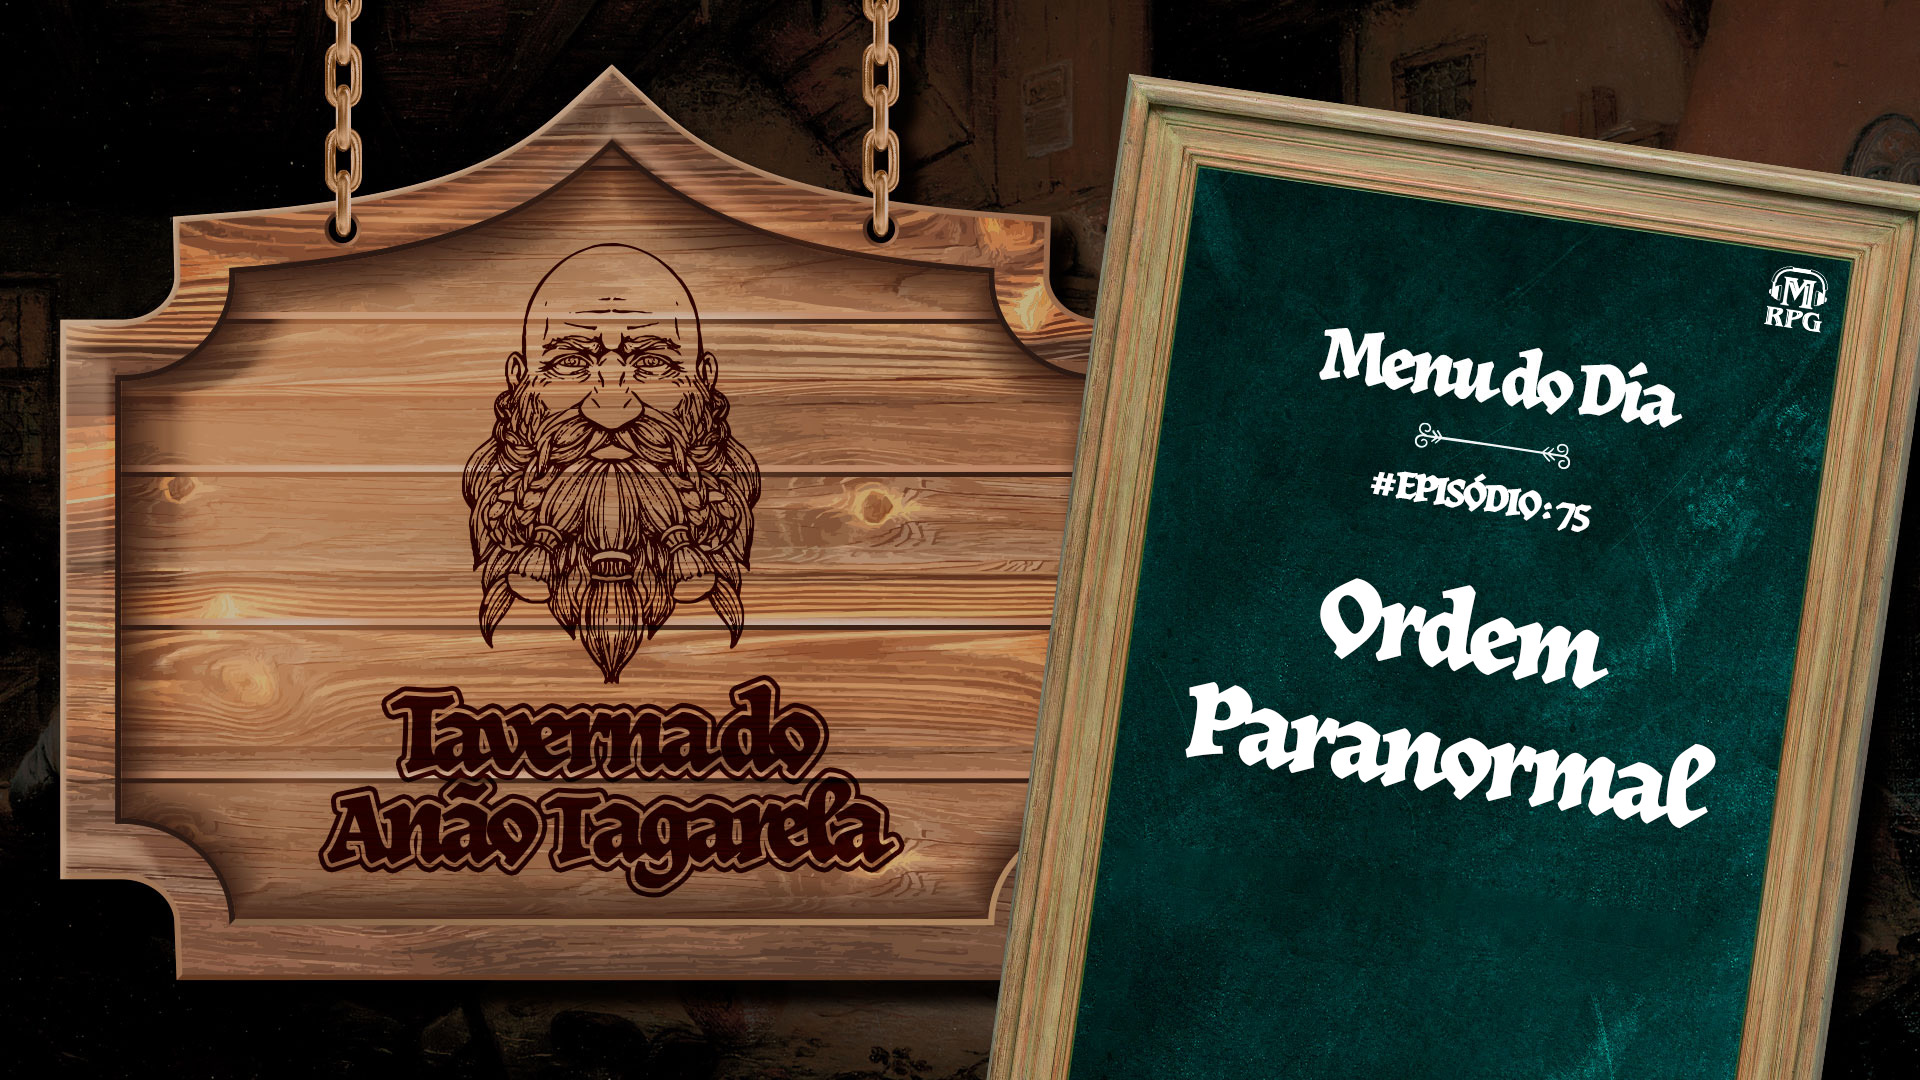 Ordem Paranormal – Taverna do Anão Tagarela #75